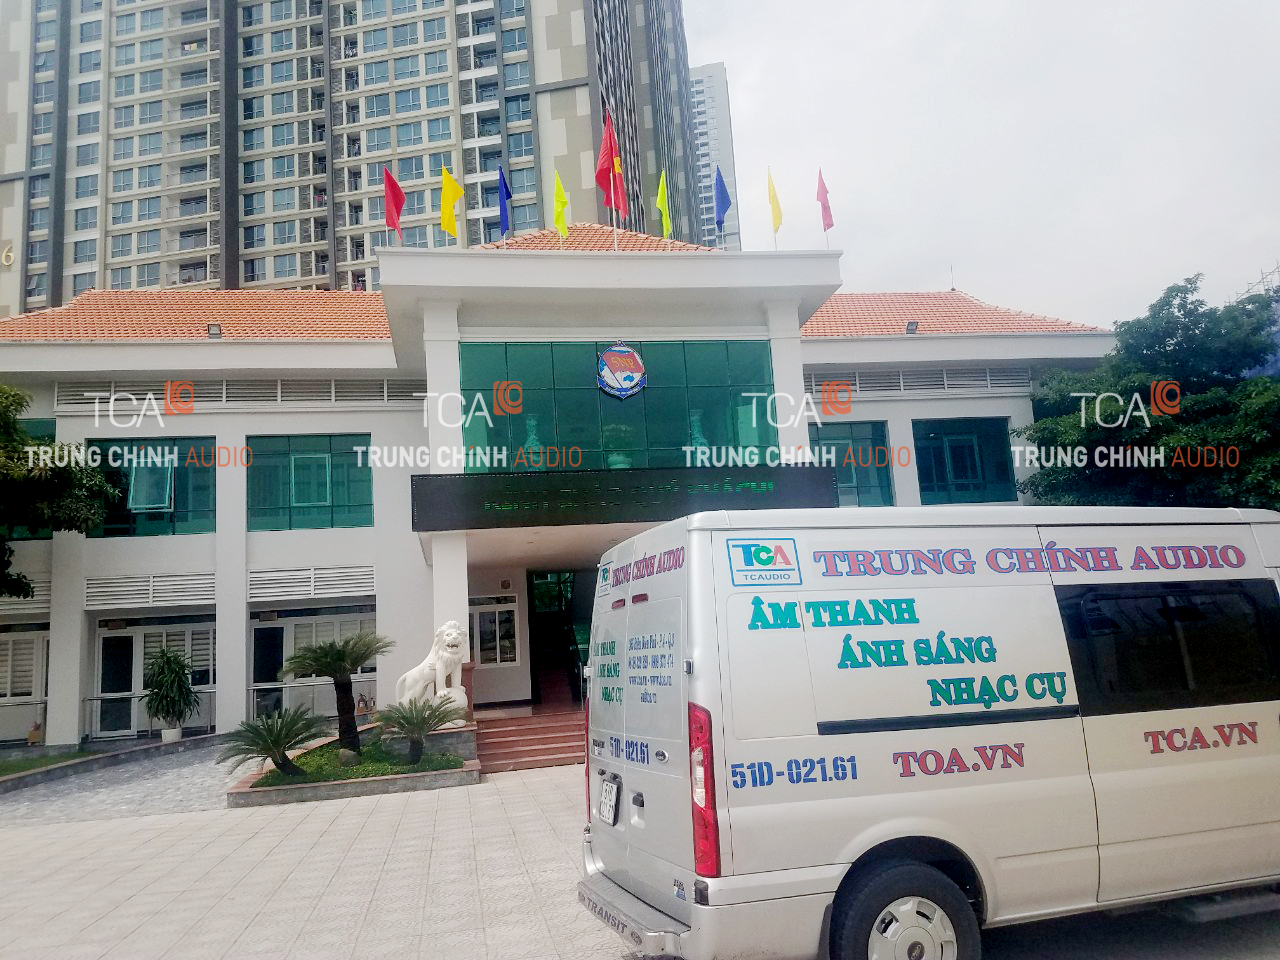 TCA hoàn thành hệ thống âm thanh cho tổng công ty Tân Cảng Sài Gòn